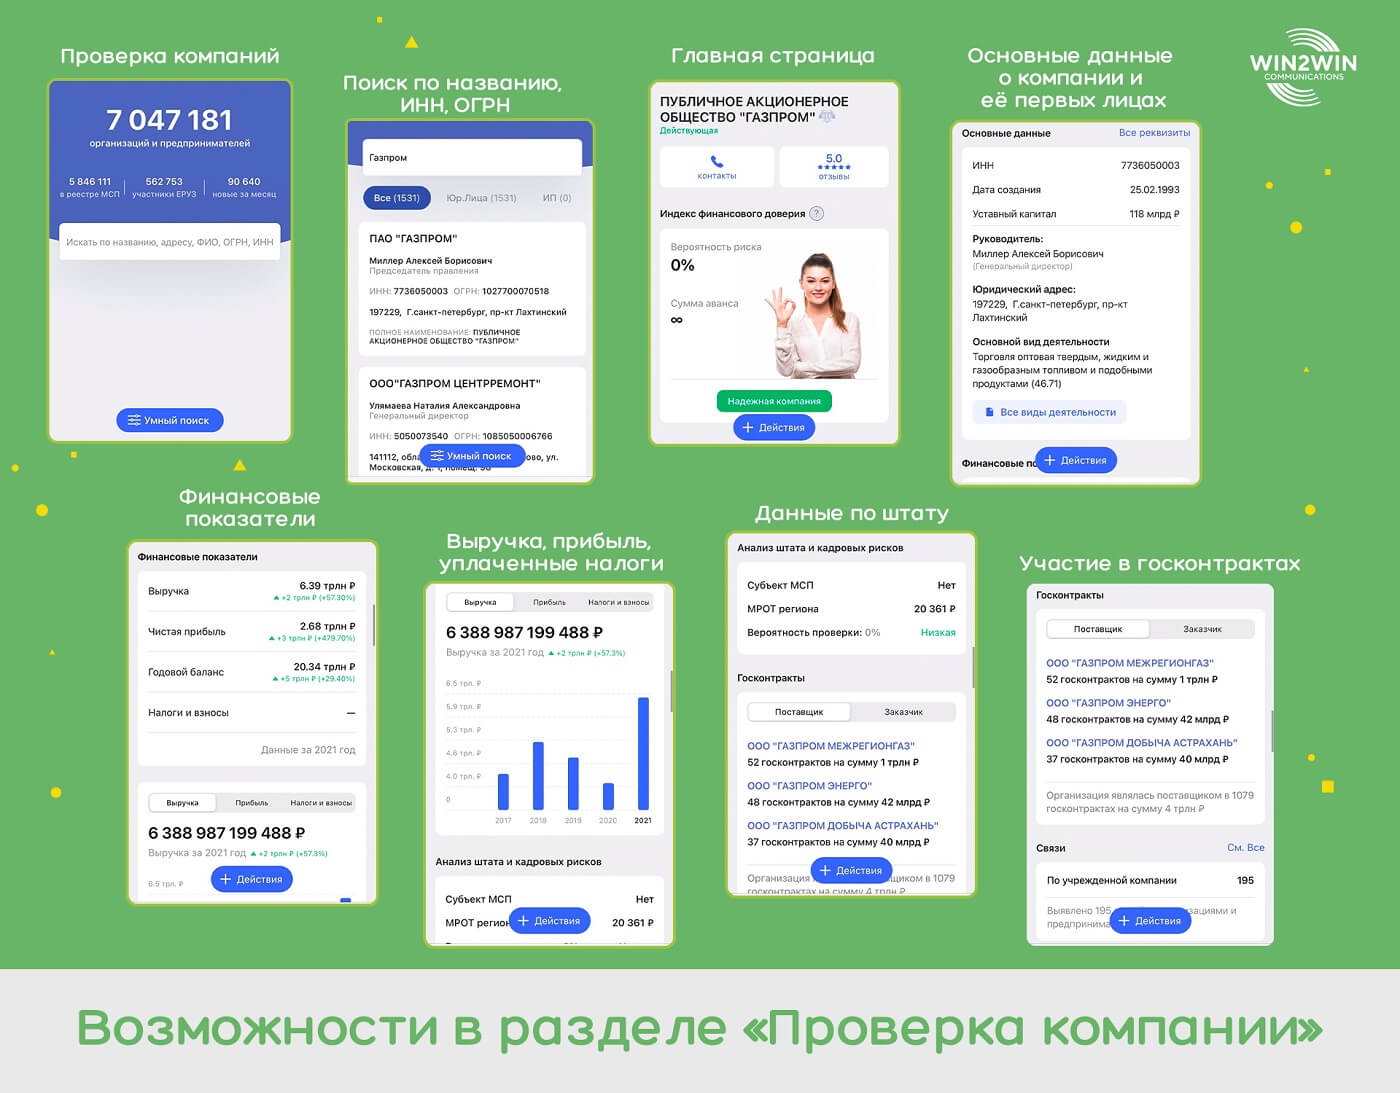 TenChat: как устроена эта российская деловая соцсеть, кому будет полезна и как там продвигаться